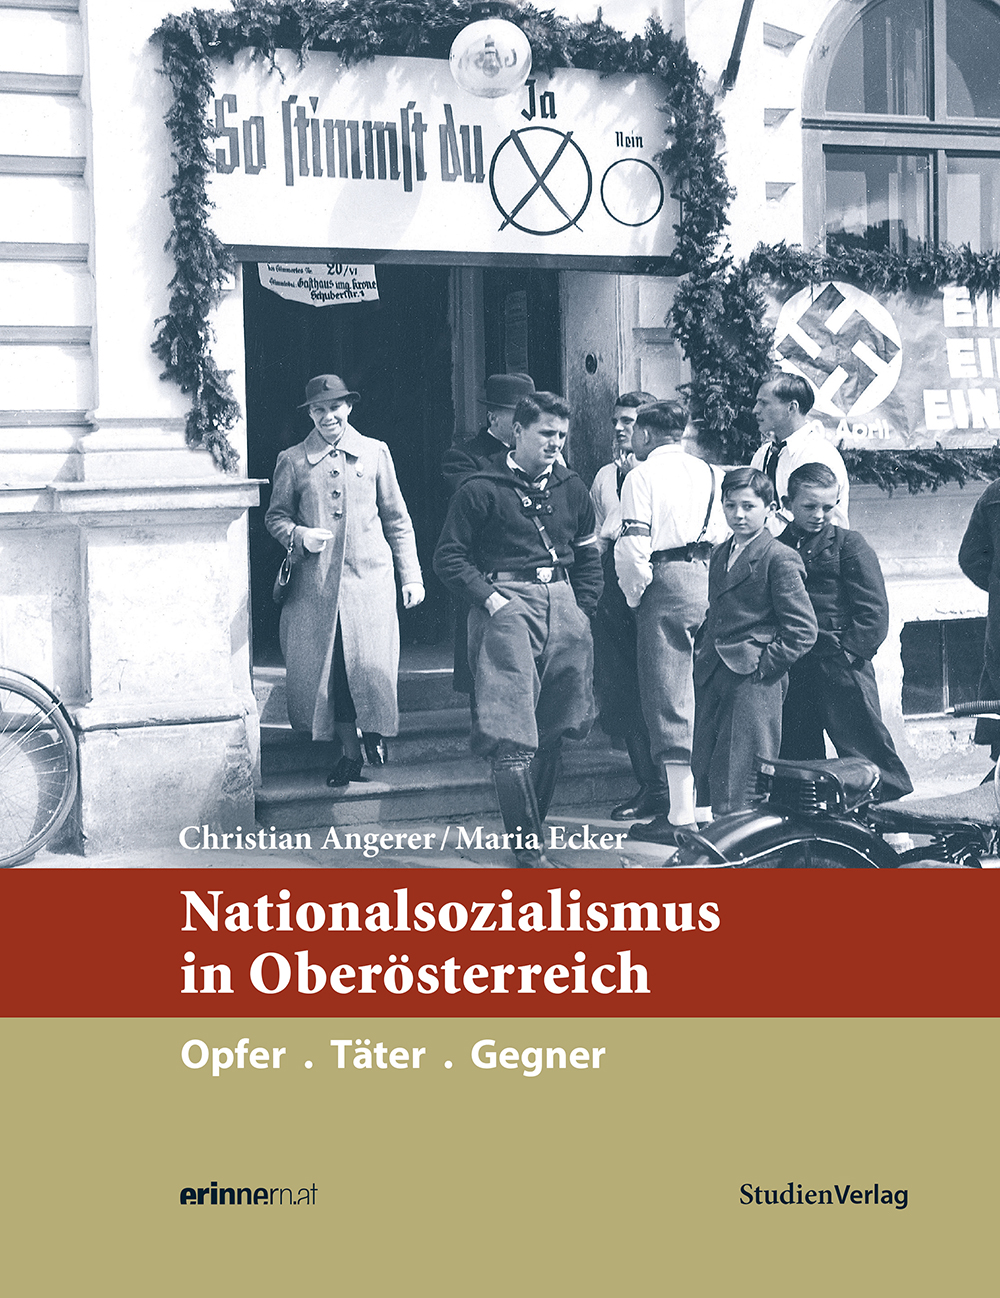 Ein Buch über die Geschichte des Nationalsozialismus in Oberösterreich für ein breites Publikum, speziell auch für junge Leser und Leserinnen – wissenschaftlich fundiert, aber in gut lesbarer Sprache.